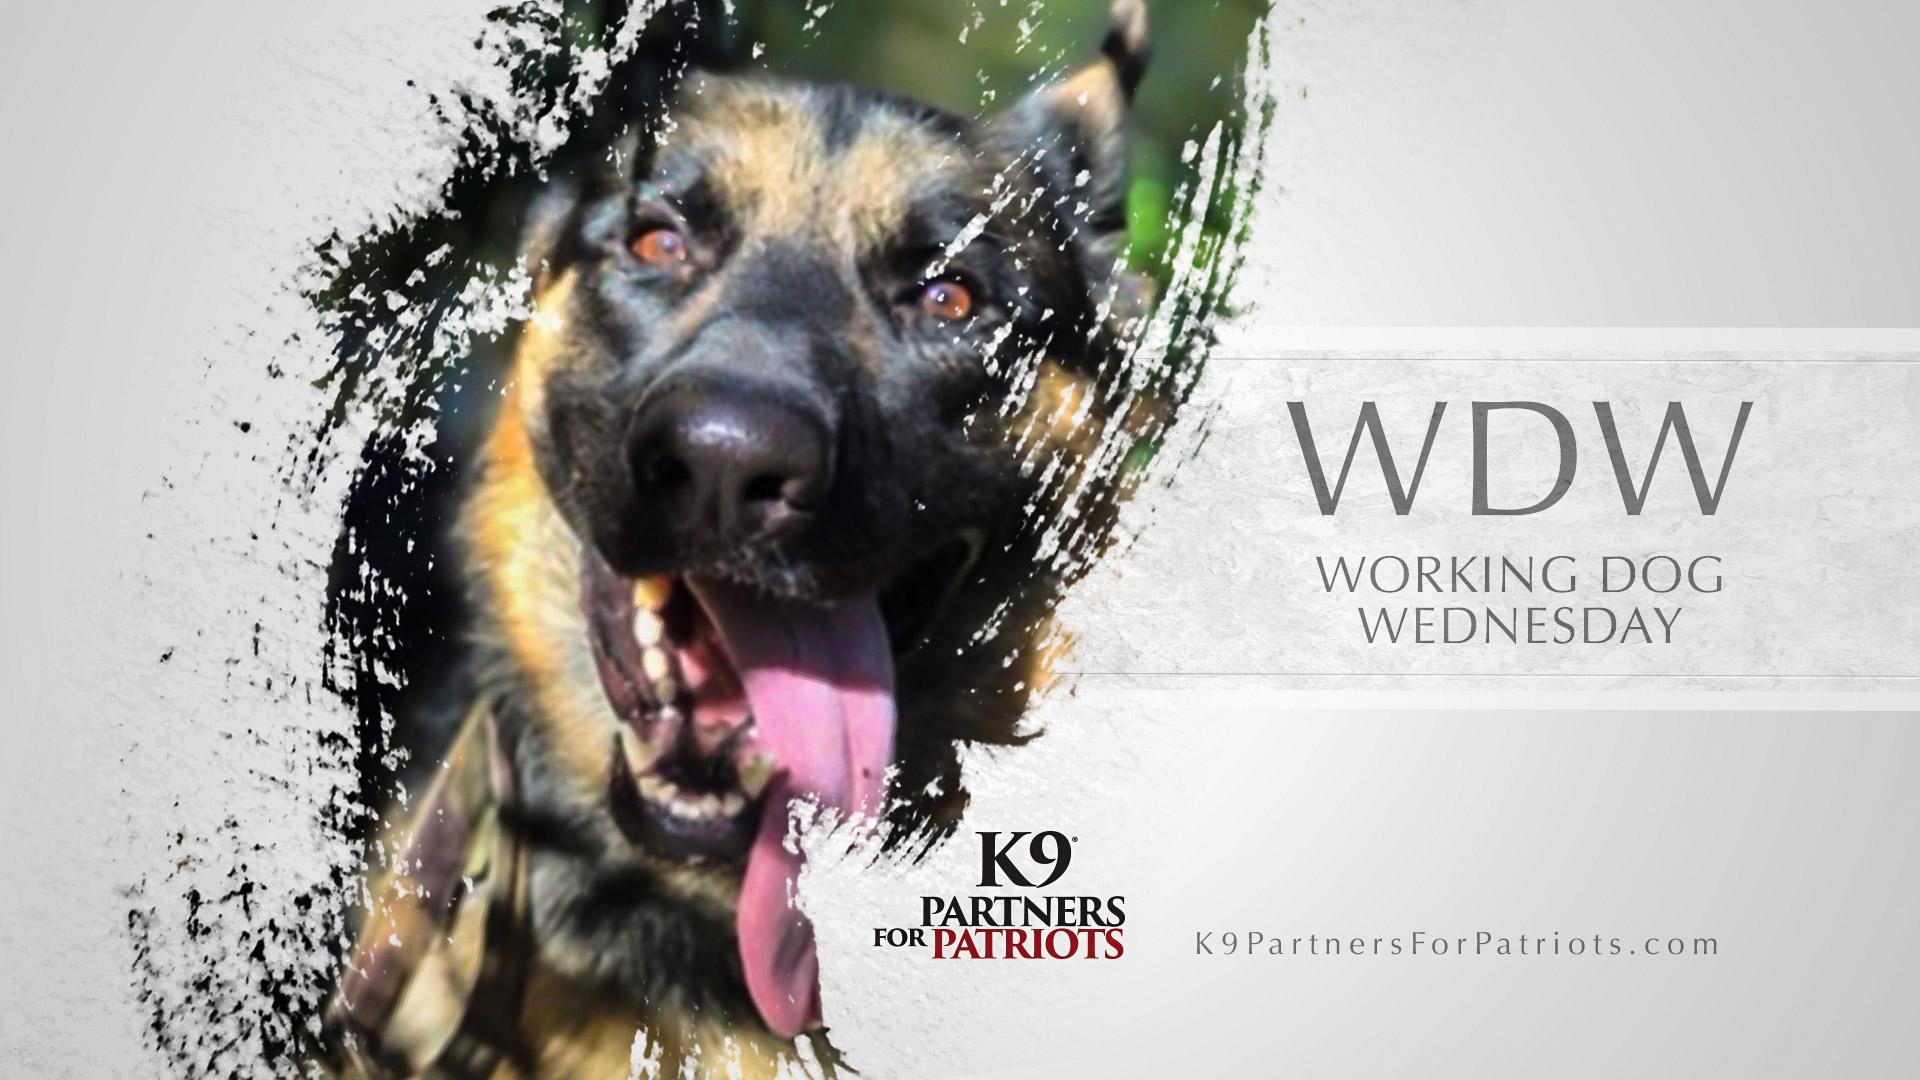 Working Dog Wednesday - WDW